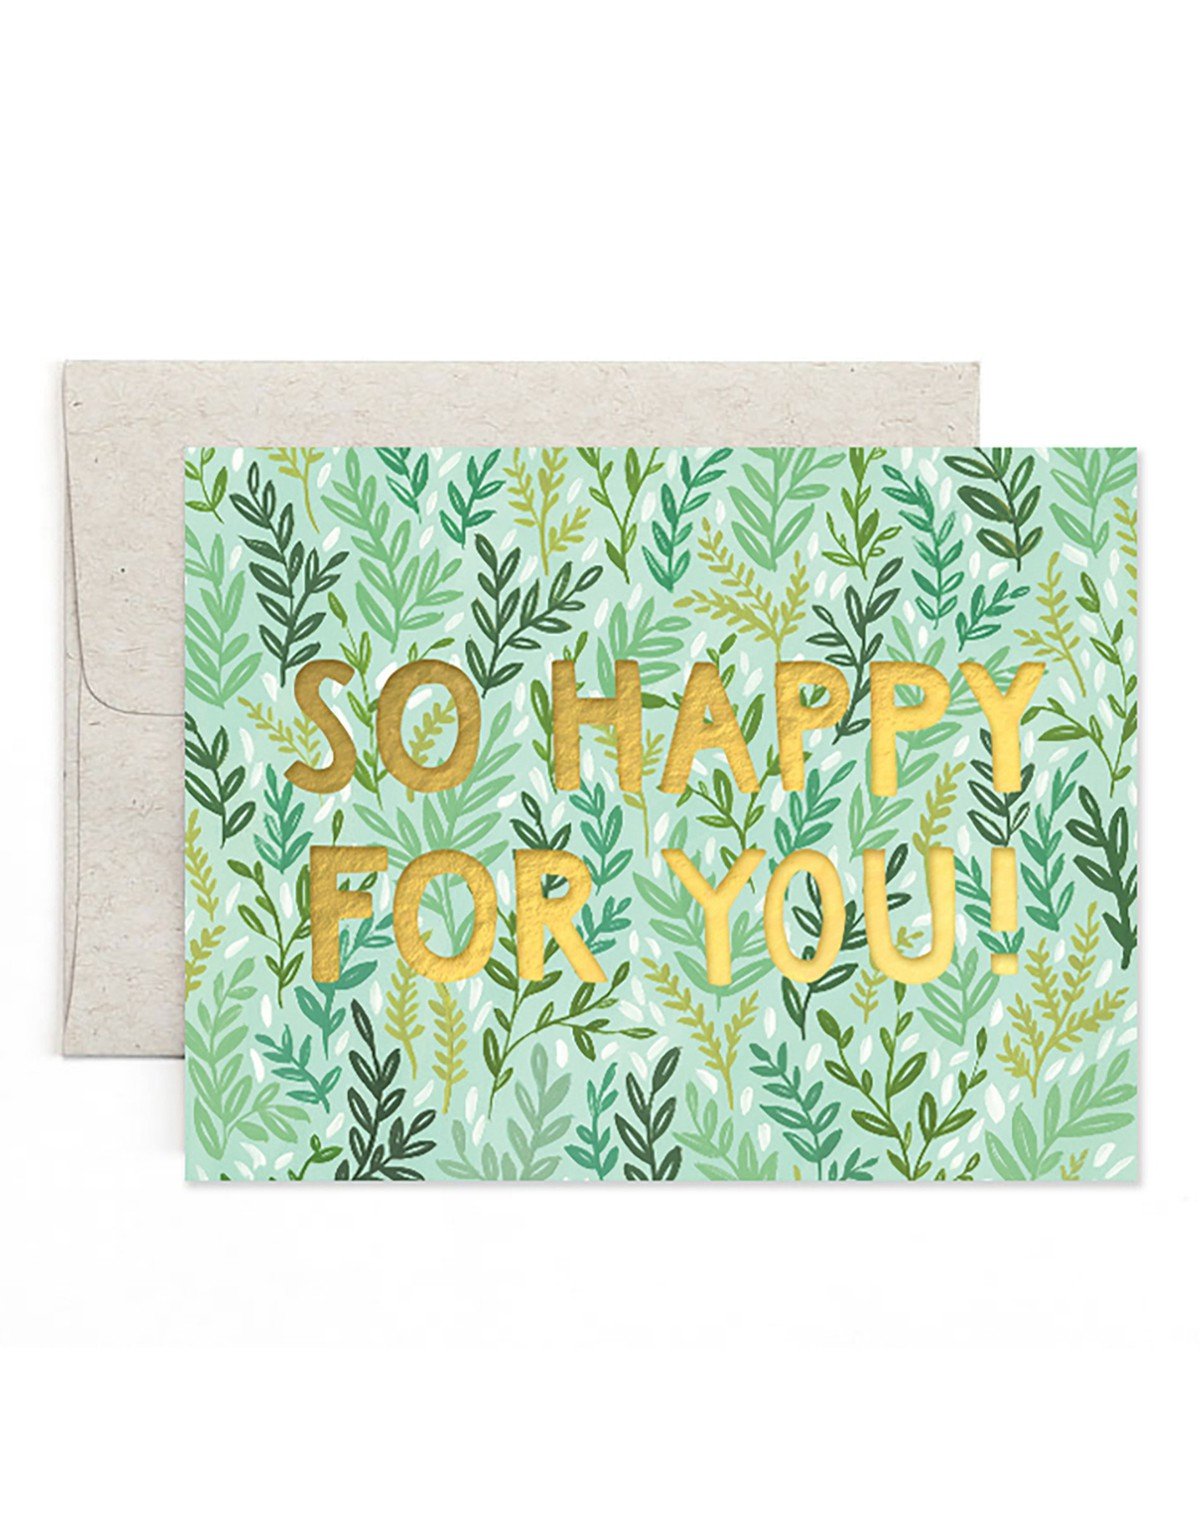 Mint Meadow Friendship Greeting Card item